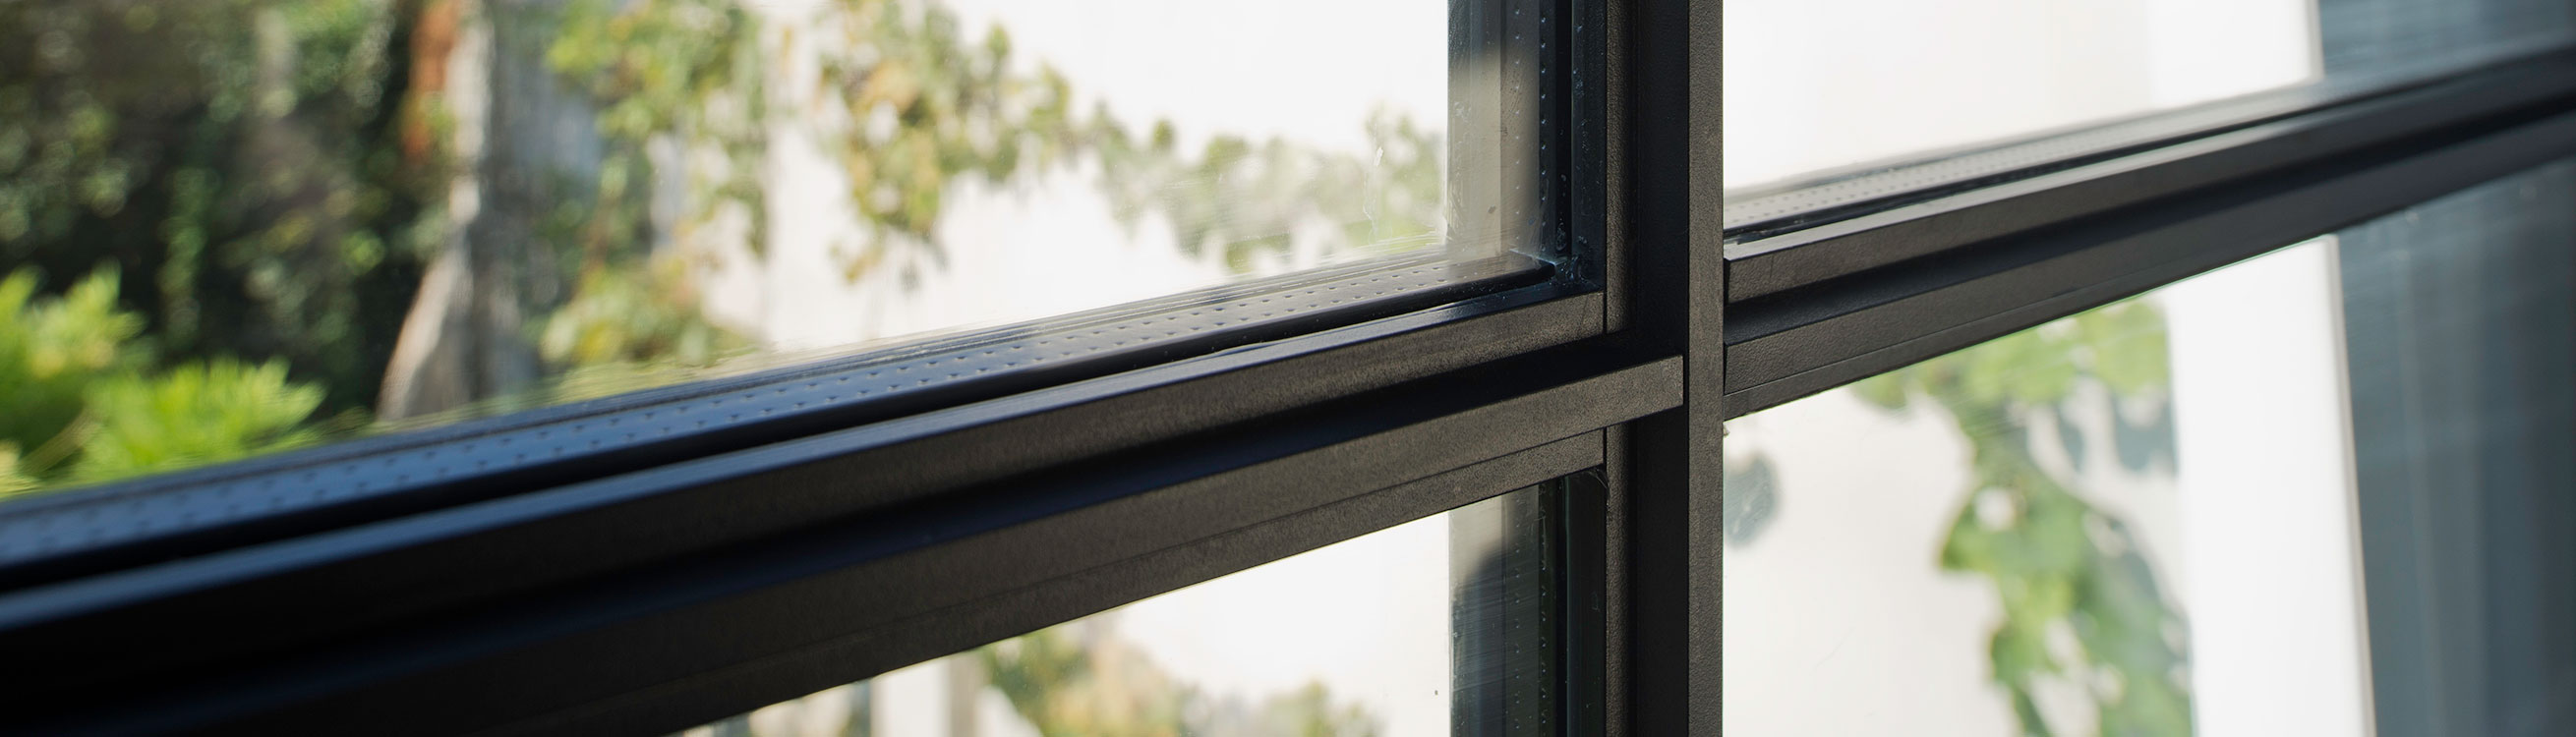 fenêtres en aluminium noir avec profilés en aluminium faciles à entretenir